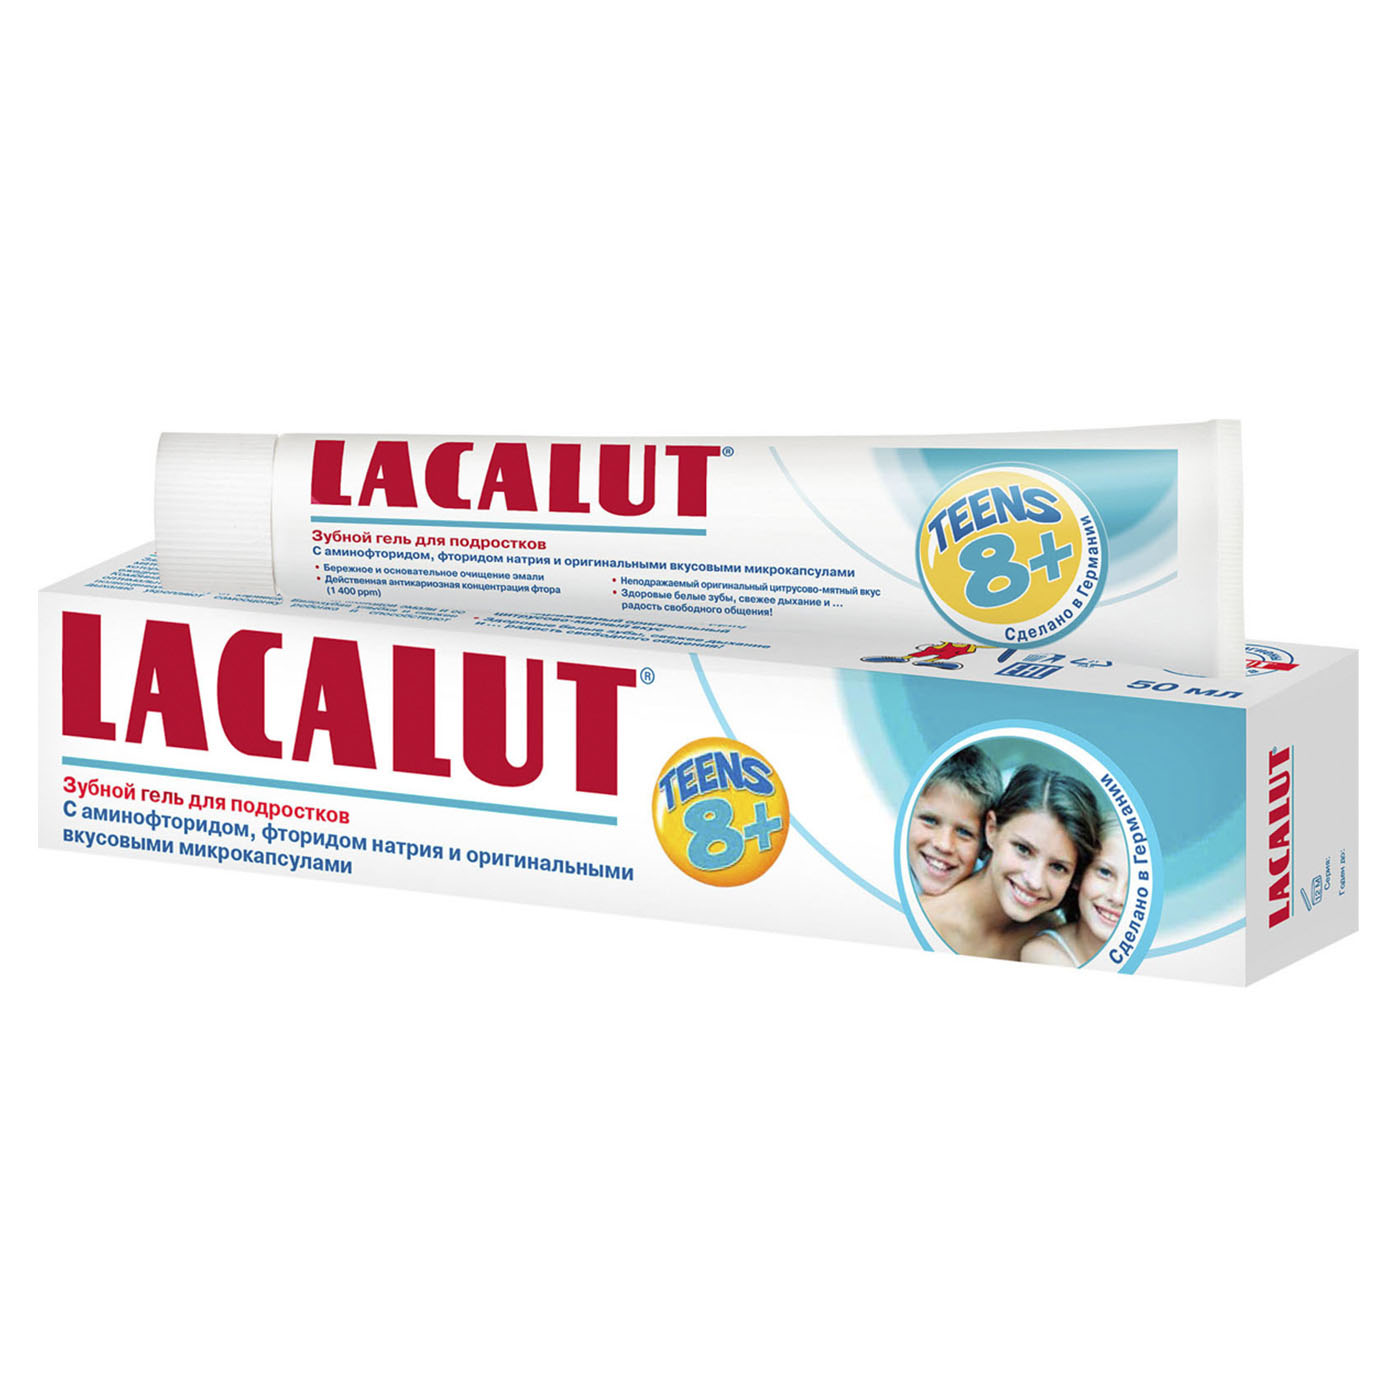 Lacalut Зубная паста Тинс зубной гель 8+ 50 мл (Lacalut, Зуб